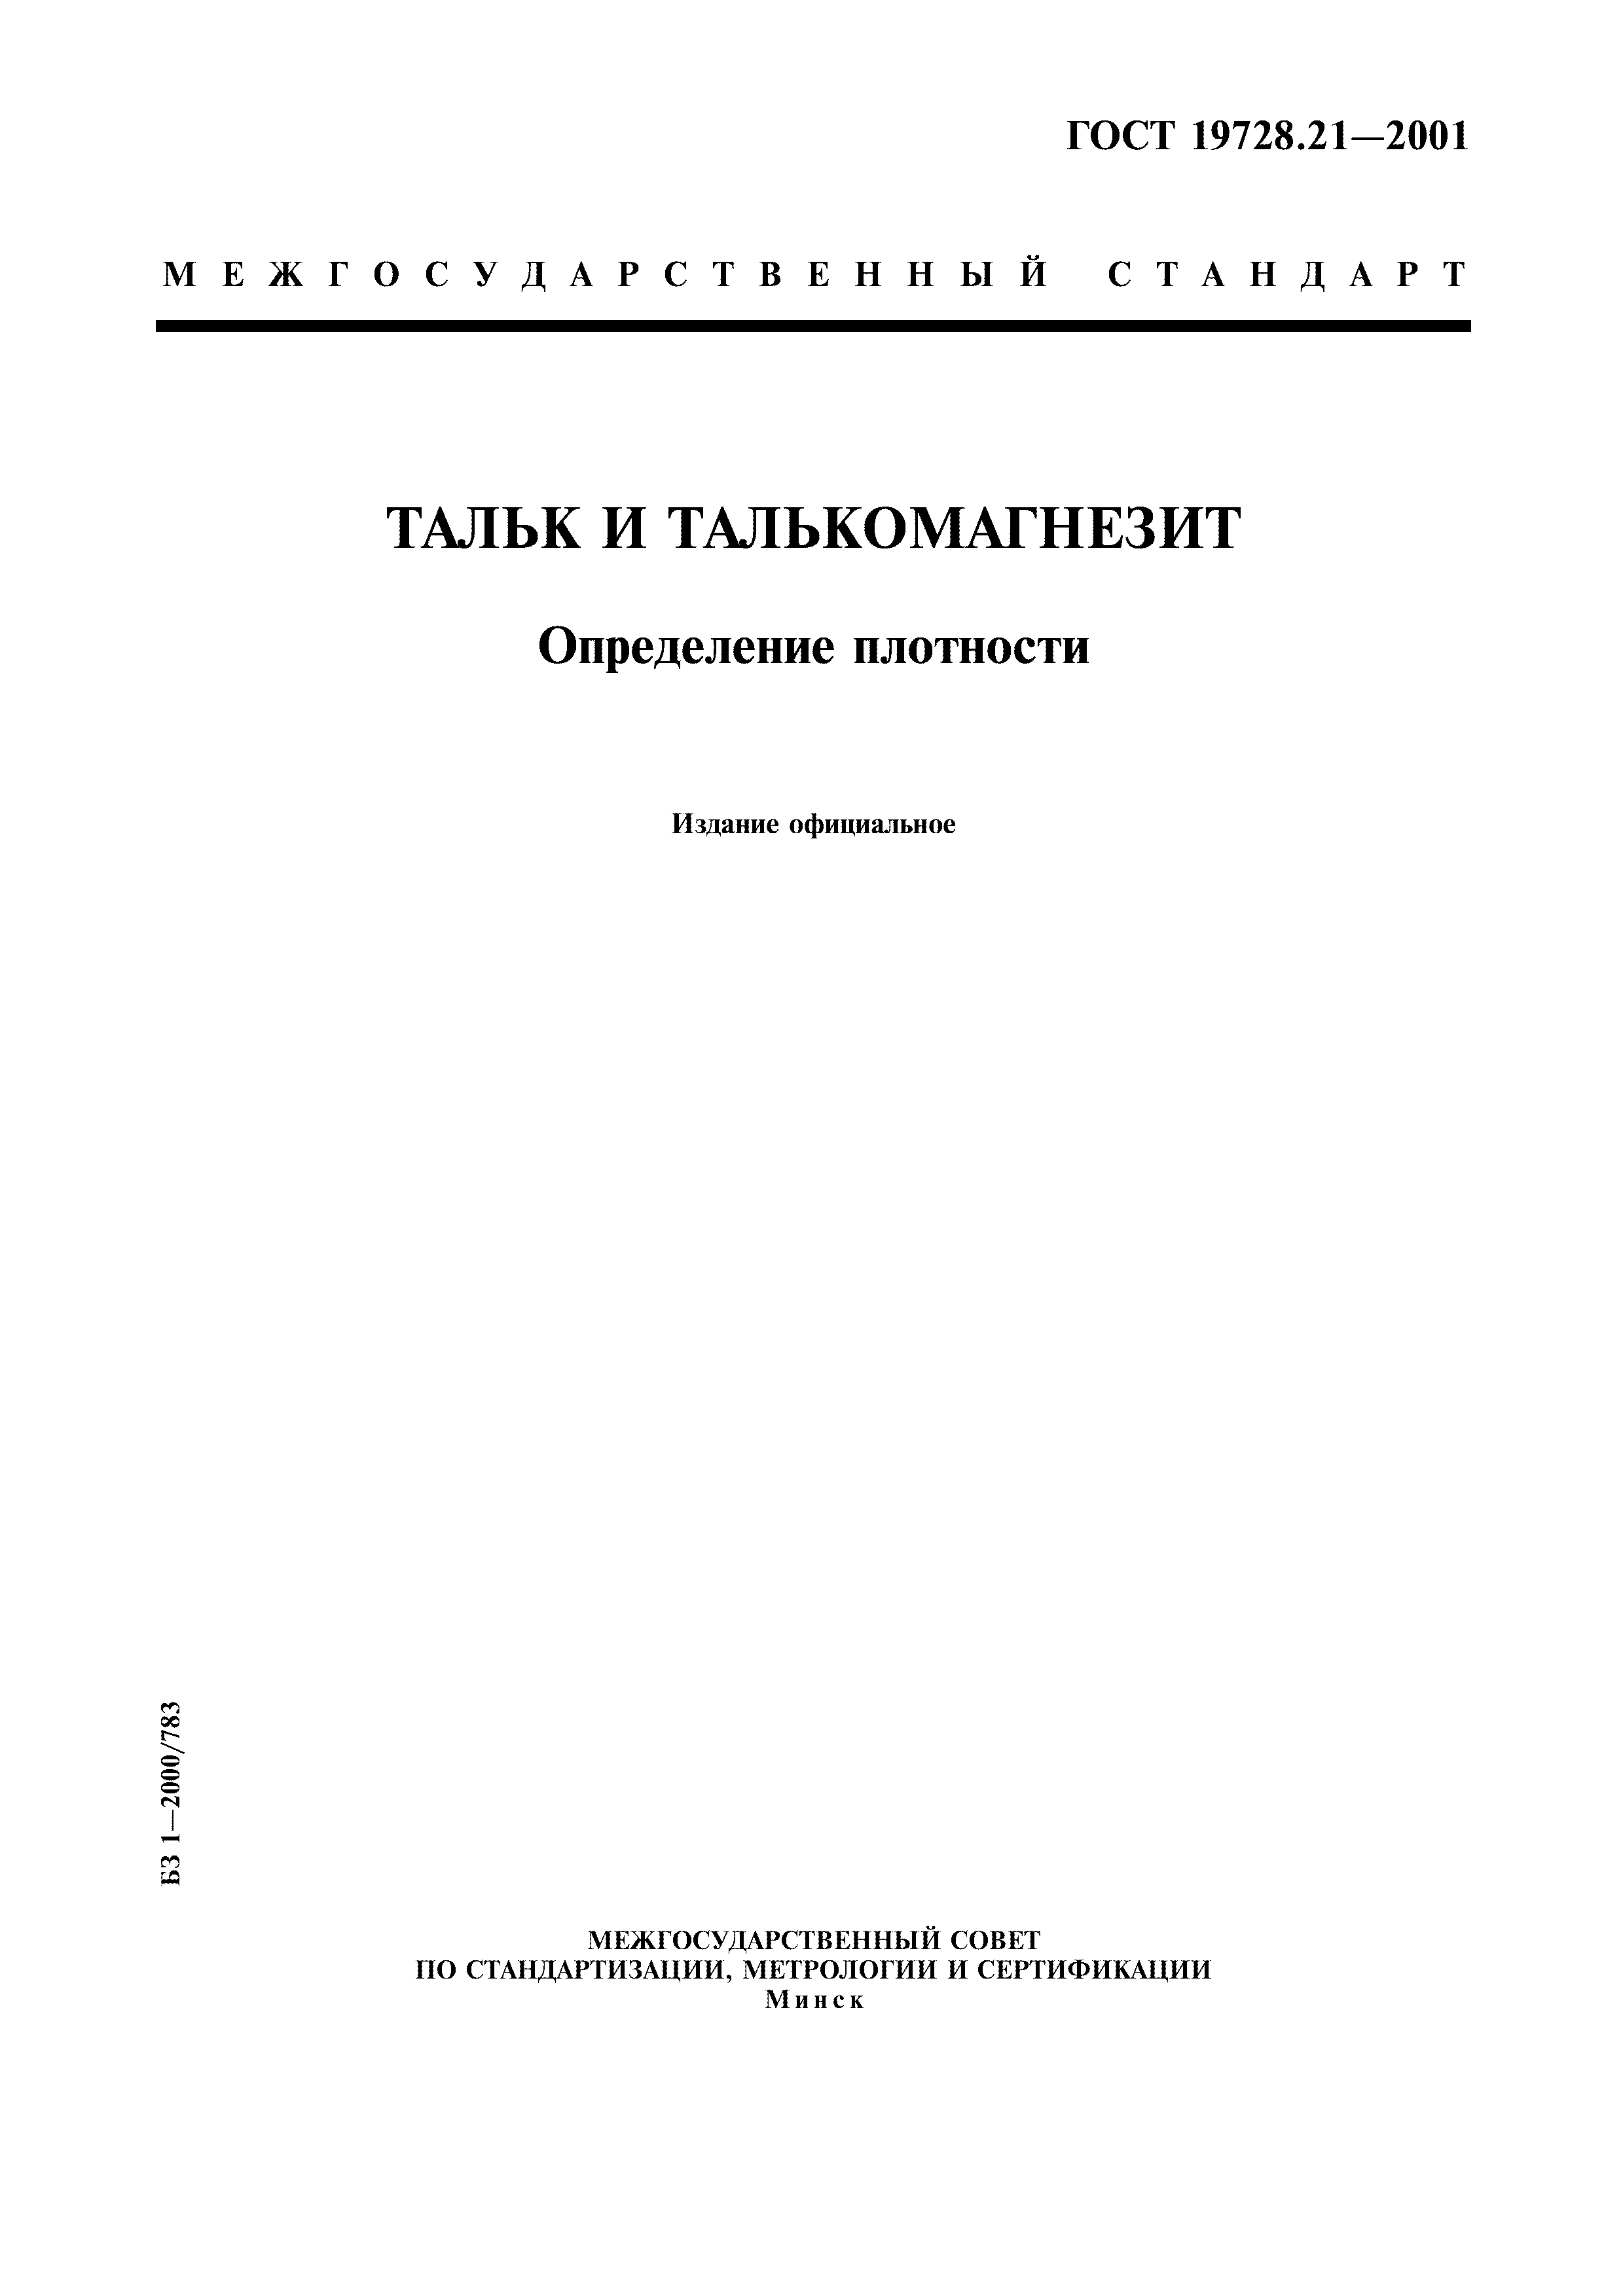 Мешки-вкладыши Пленочные ГОСТ 19360-74